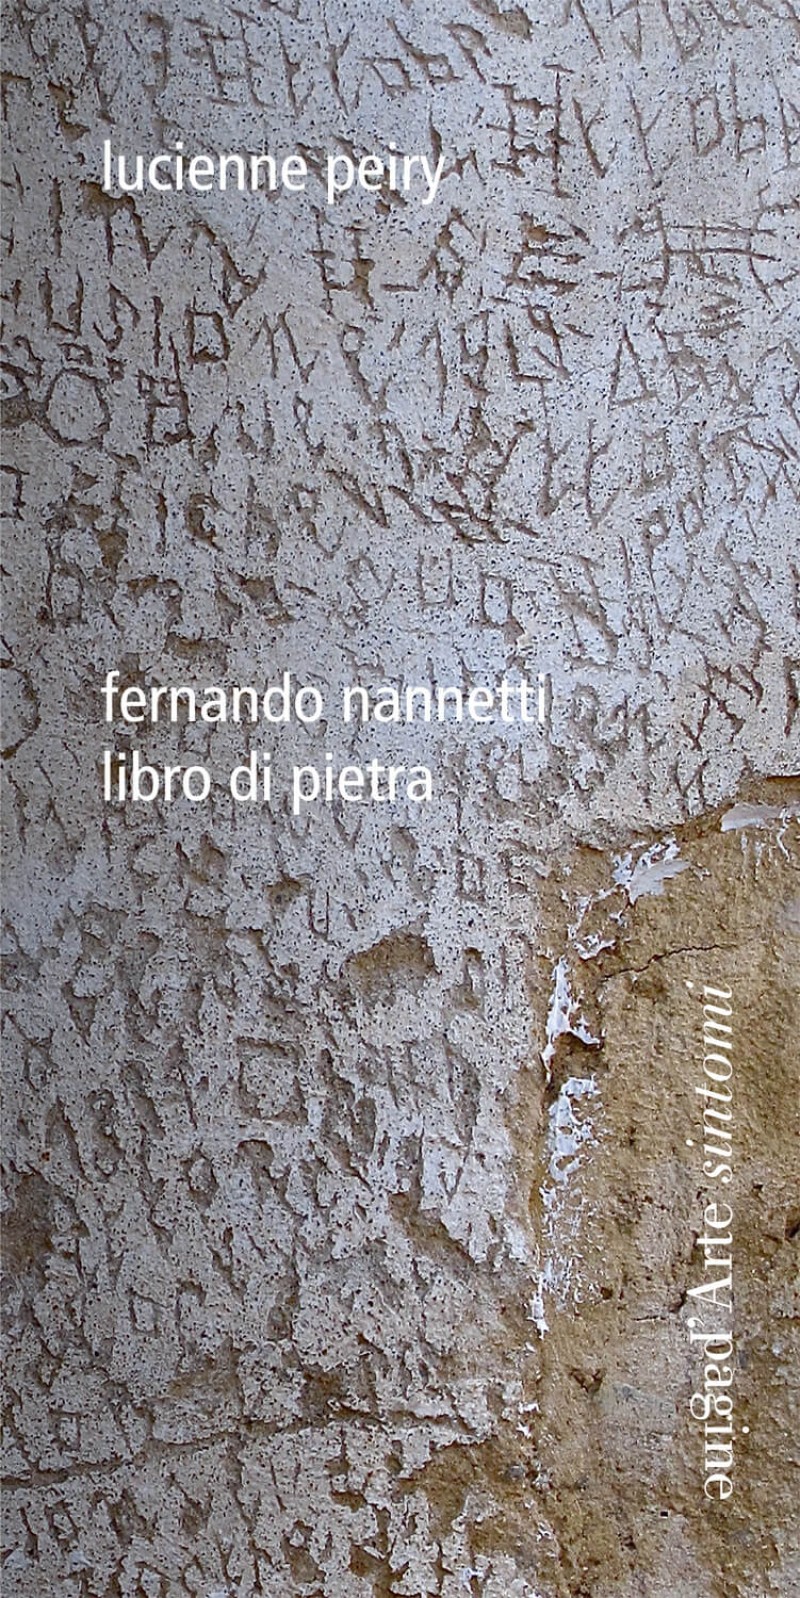 Libro di Pietra. Fernando Nannetti, Tesserete, Pagina d’Arte, 2021.